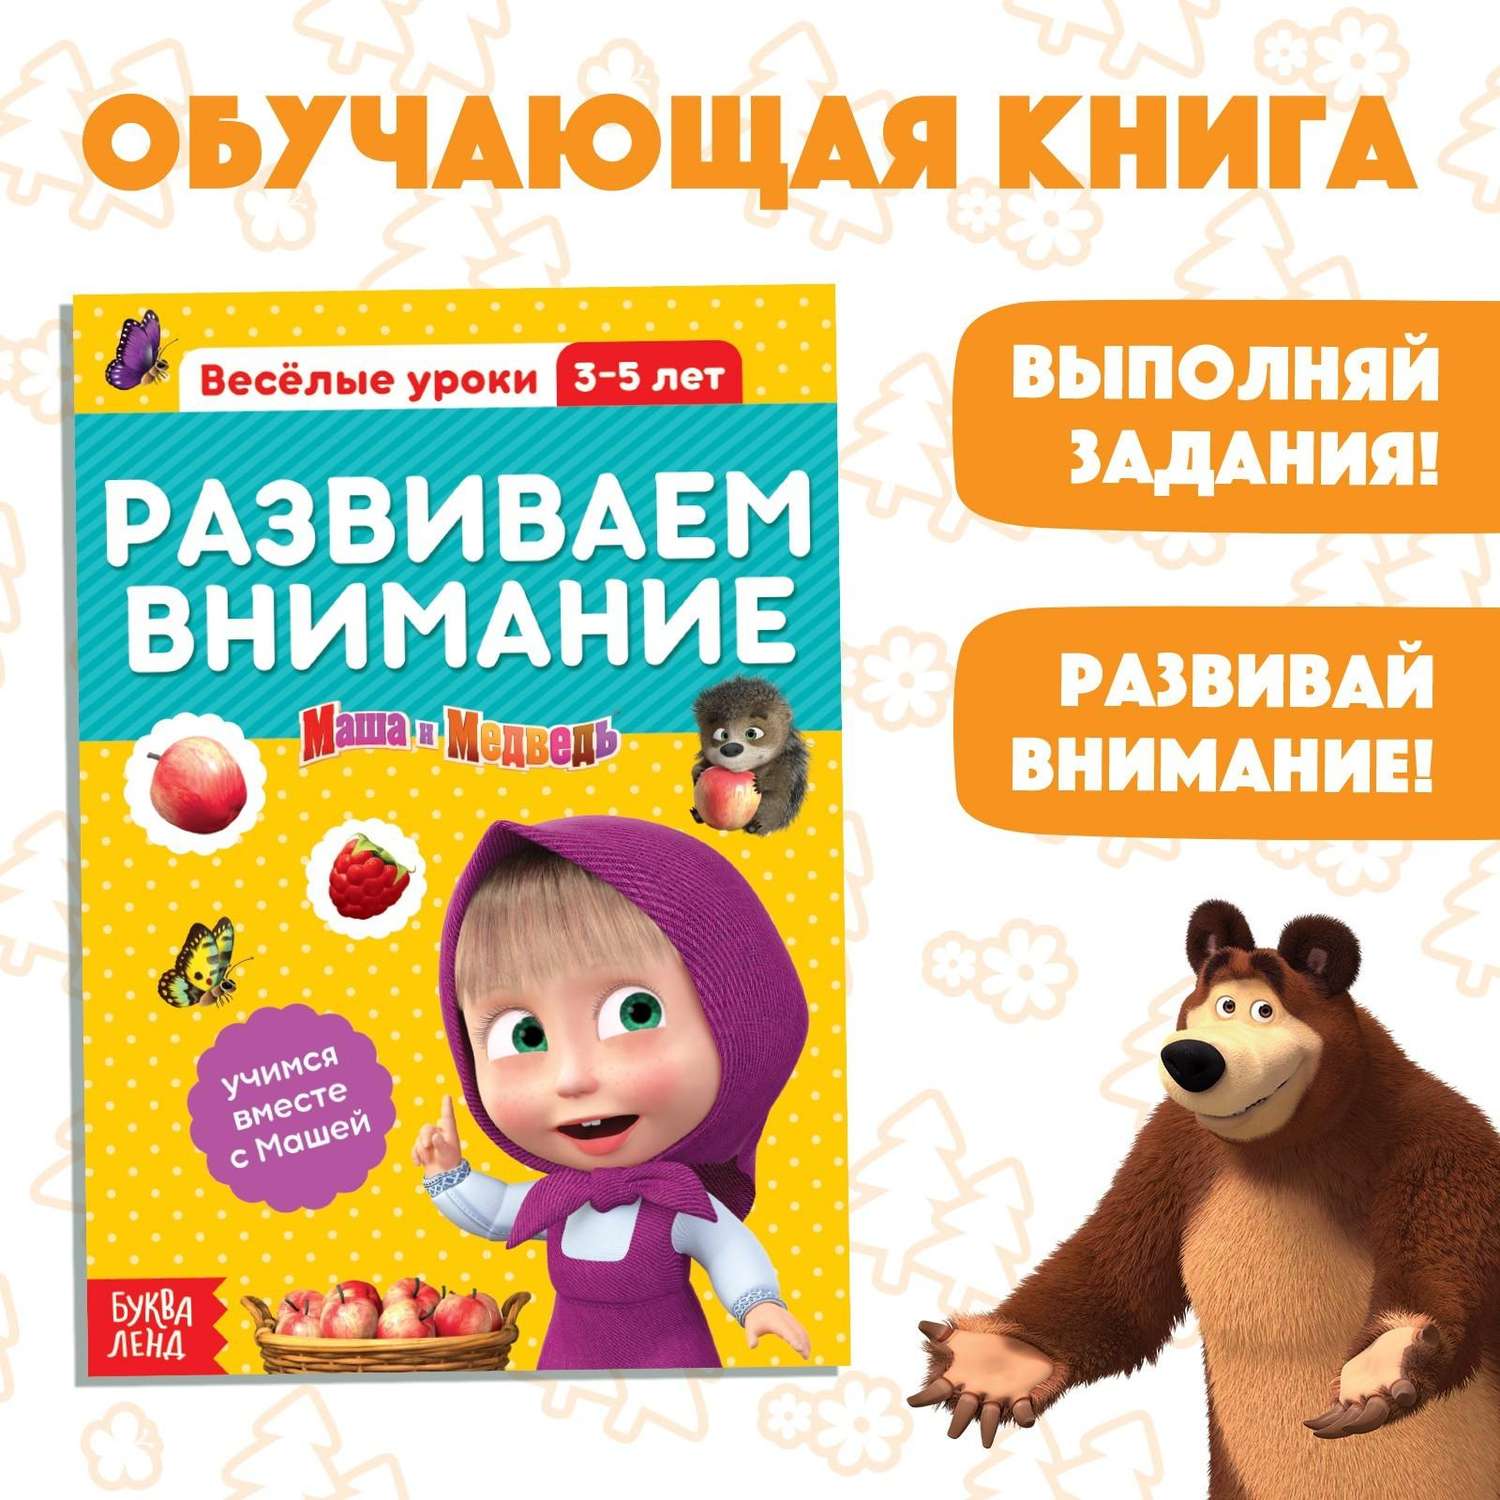 Первые знания Маша и Медведь Буква-ленд веселые уроки Развиваем Внимание - фото 1